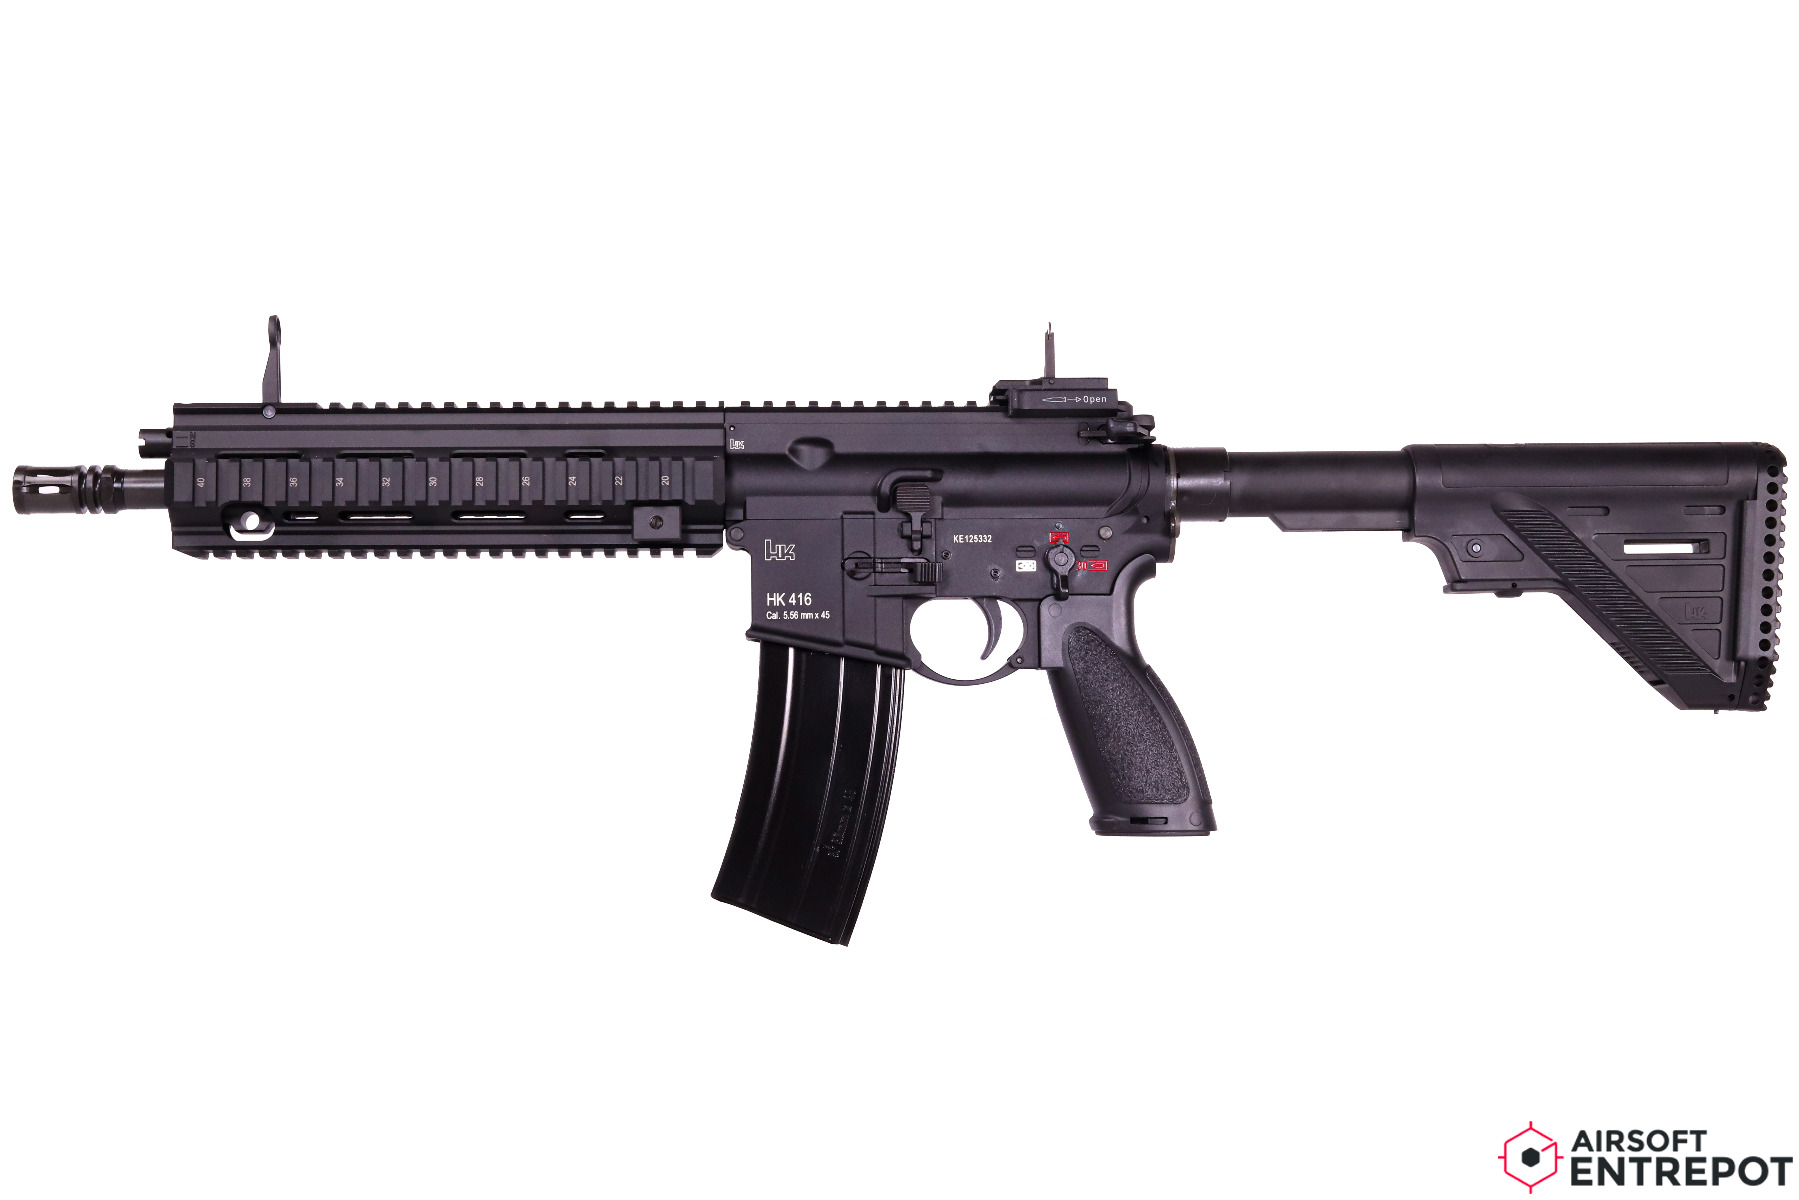 HK416 airsoft A5 : Un modèle très polyvalent